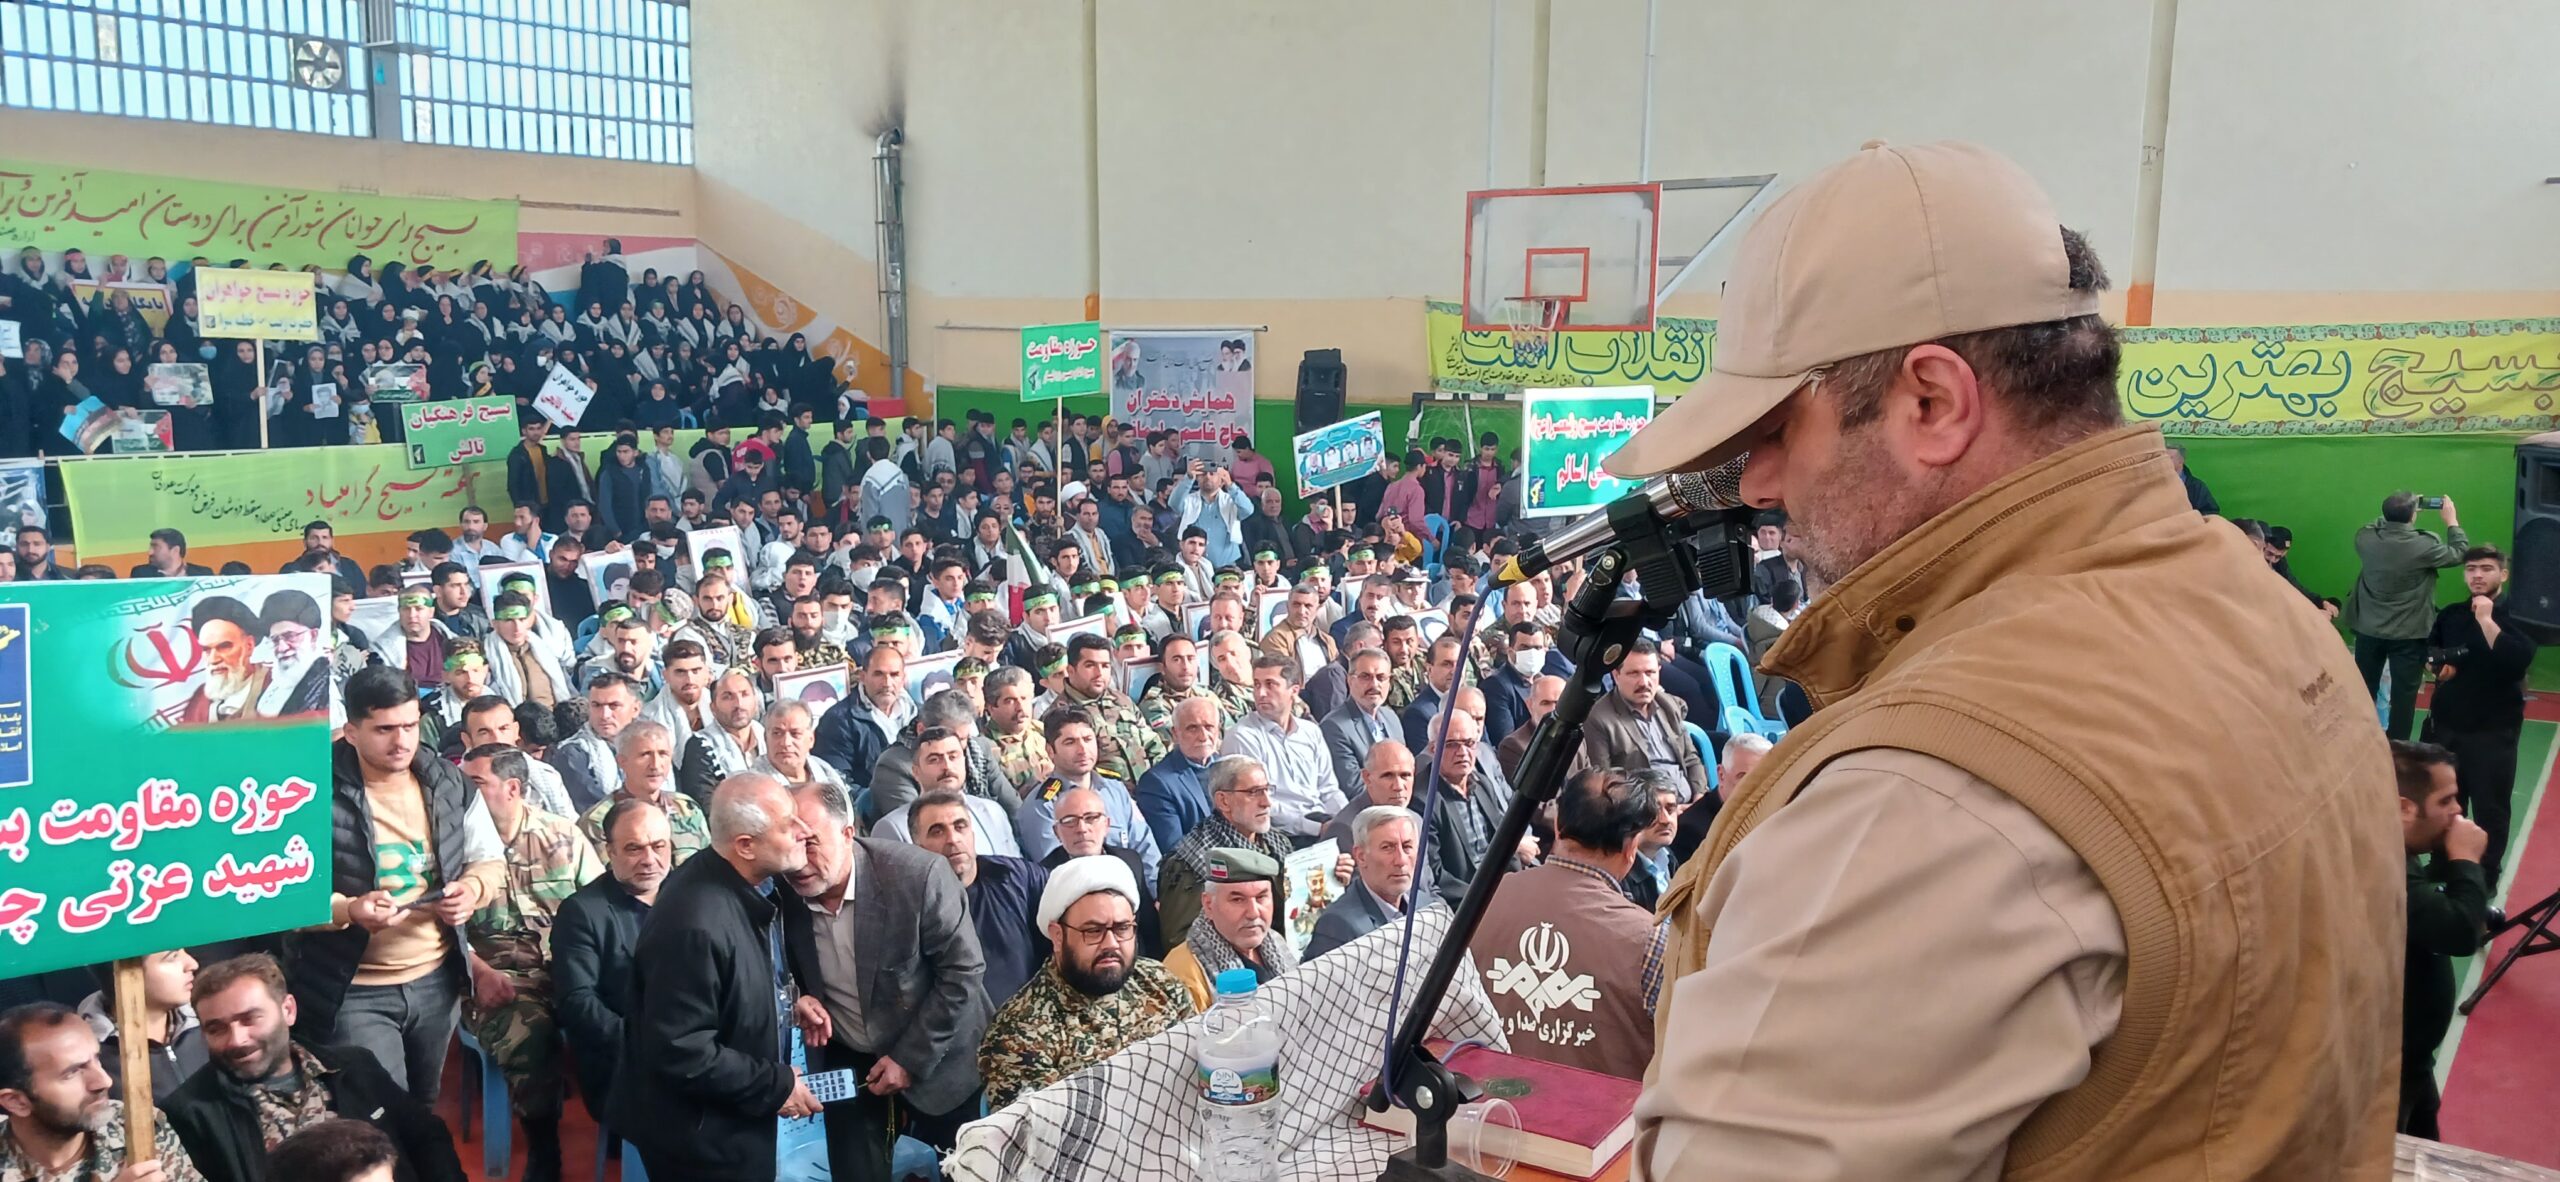 گزارش تصویری |  گردهمایی بزرگ بسیجیان شهرستان تالش در نمایش اقتدار